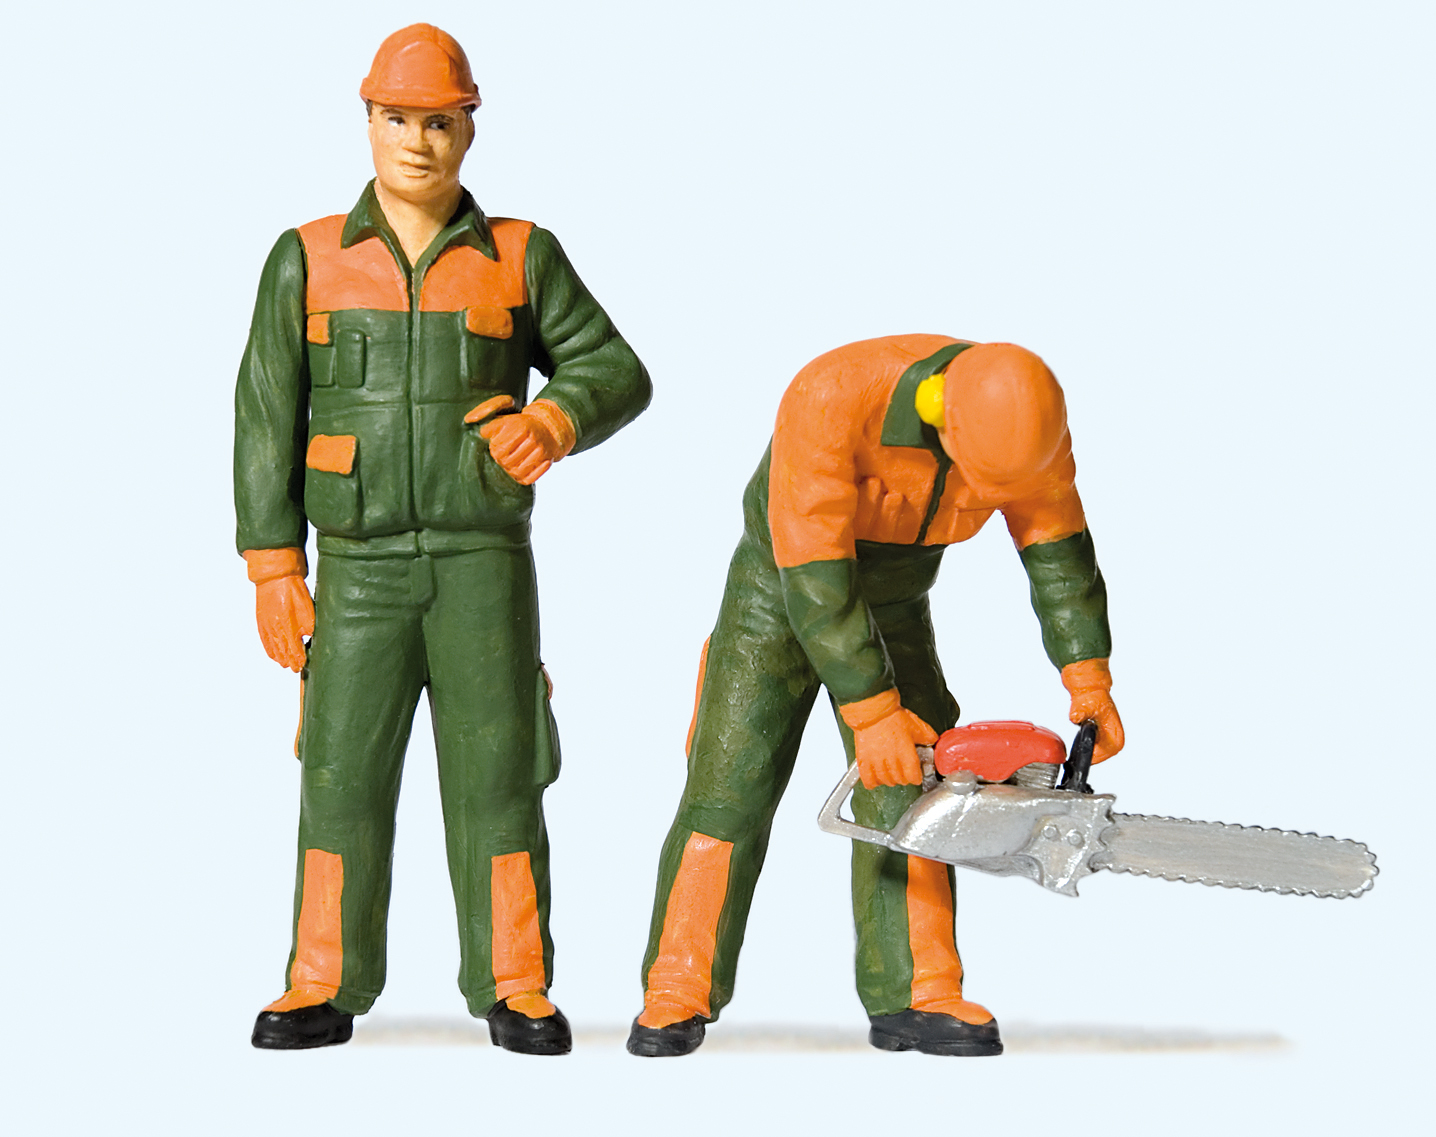 Waldarbeiter Nr. 1 grn/oranger Anzug. Ein Arbeiter steht aufrecht und der zweite hat eine Kettensge in Benutzung.